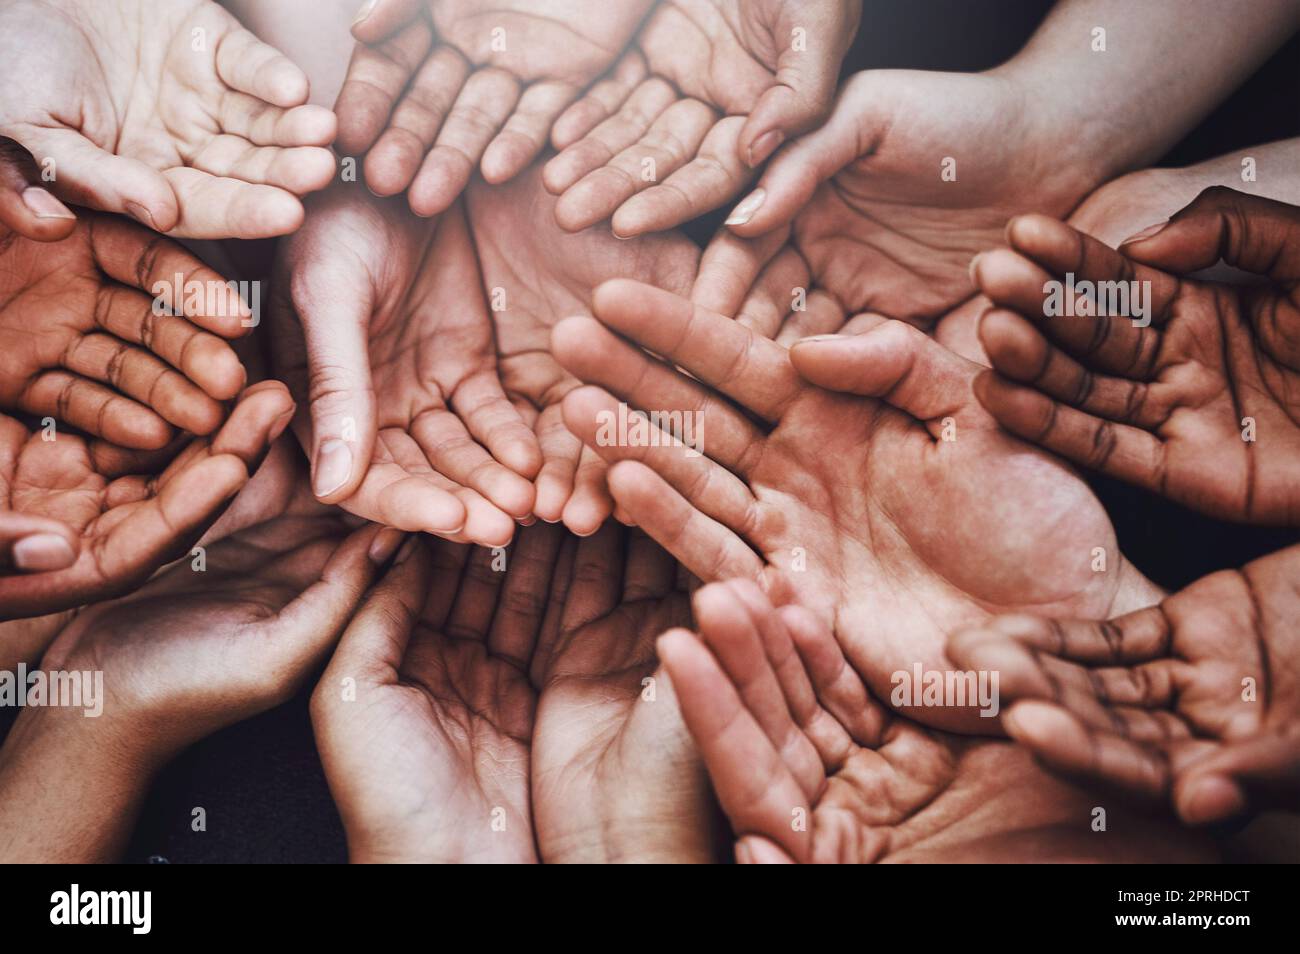 Öffne dein Herz mit den offenen Händen. Eine Gruppe von Händen, die zusammengehalten werden. Stockfoto